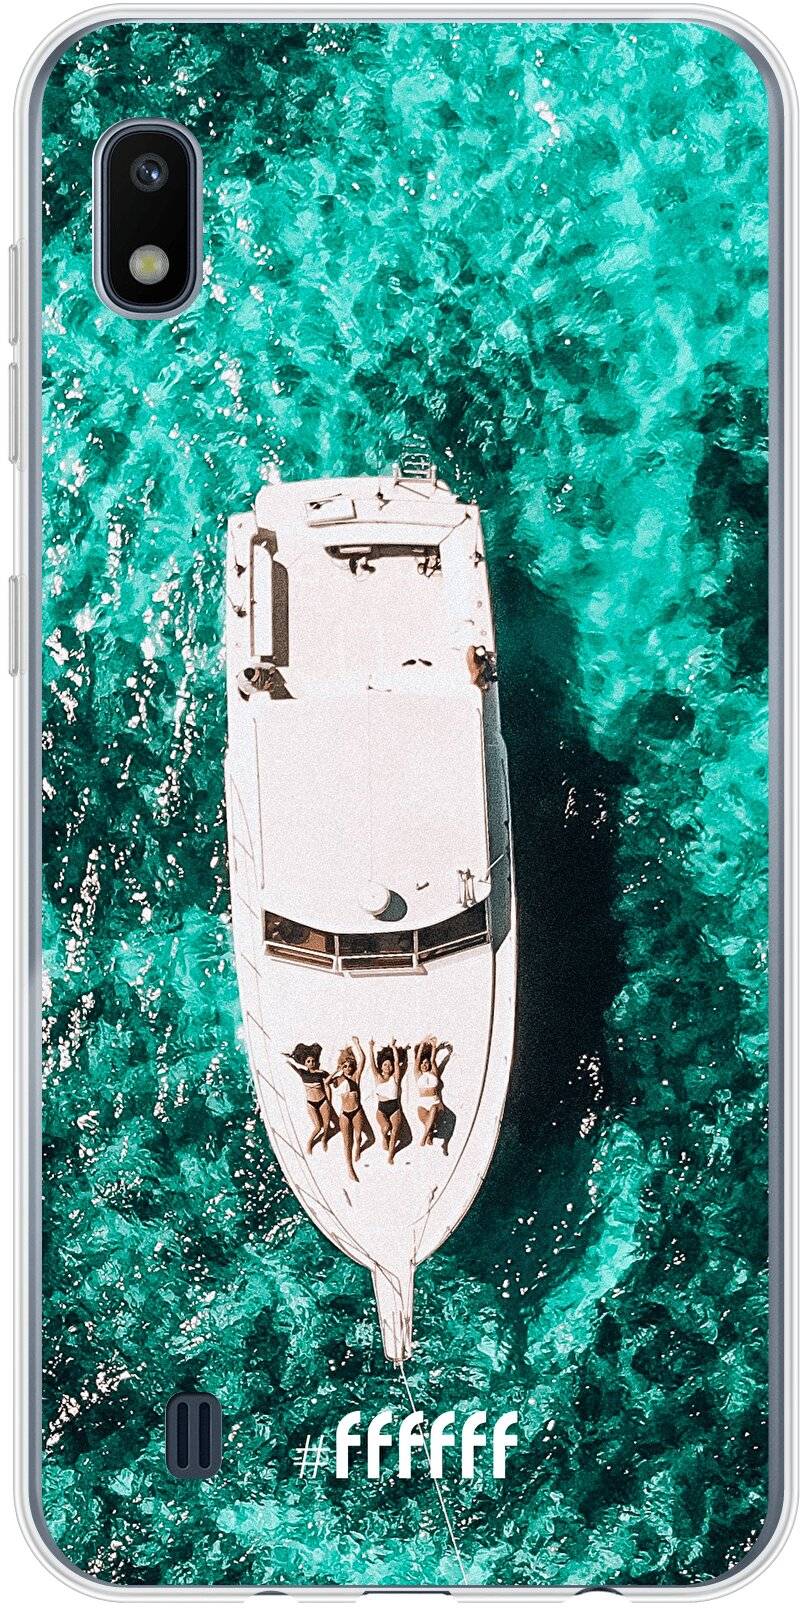 Yacht Life Galaxy A10